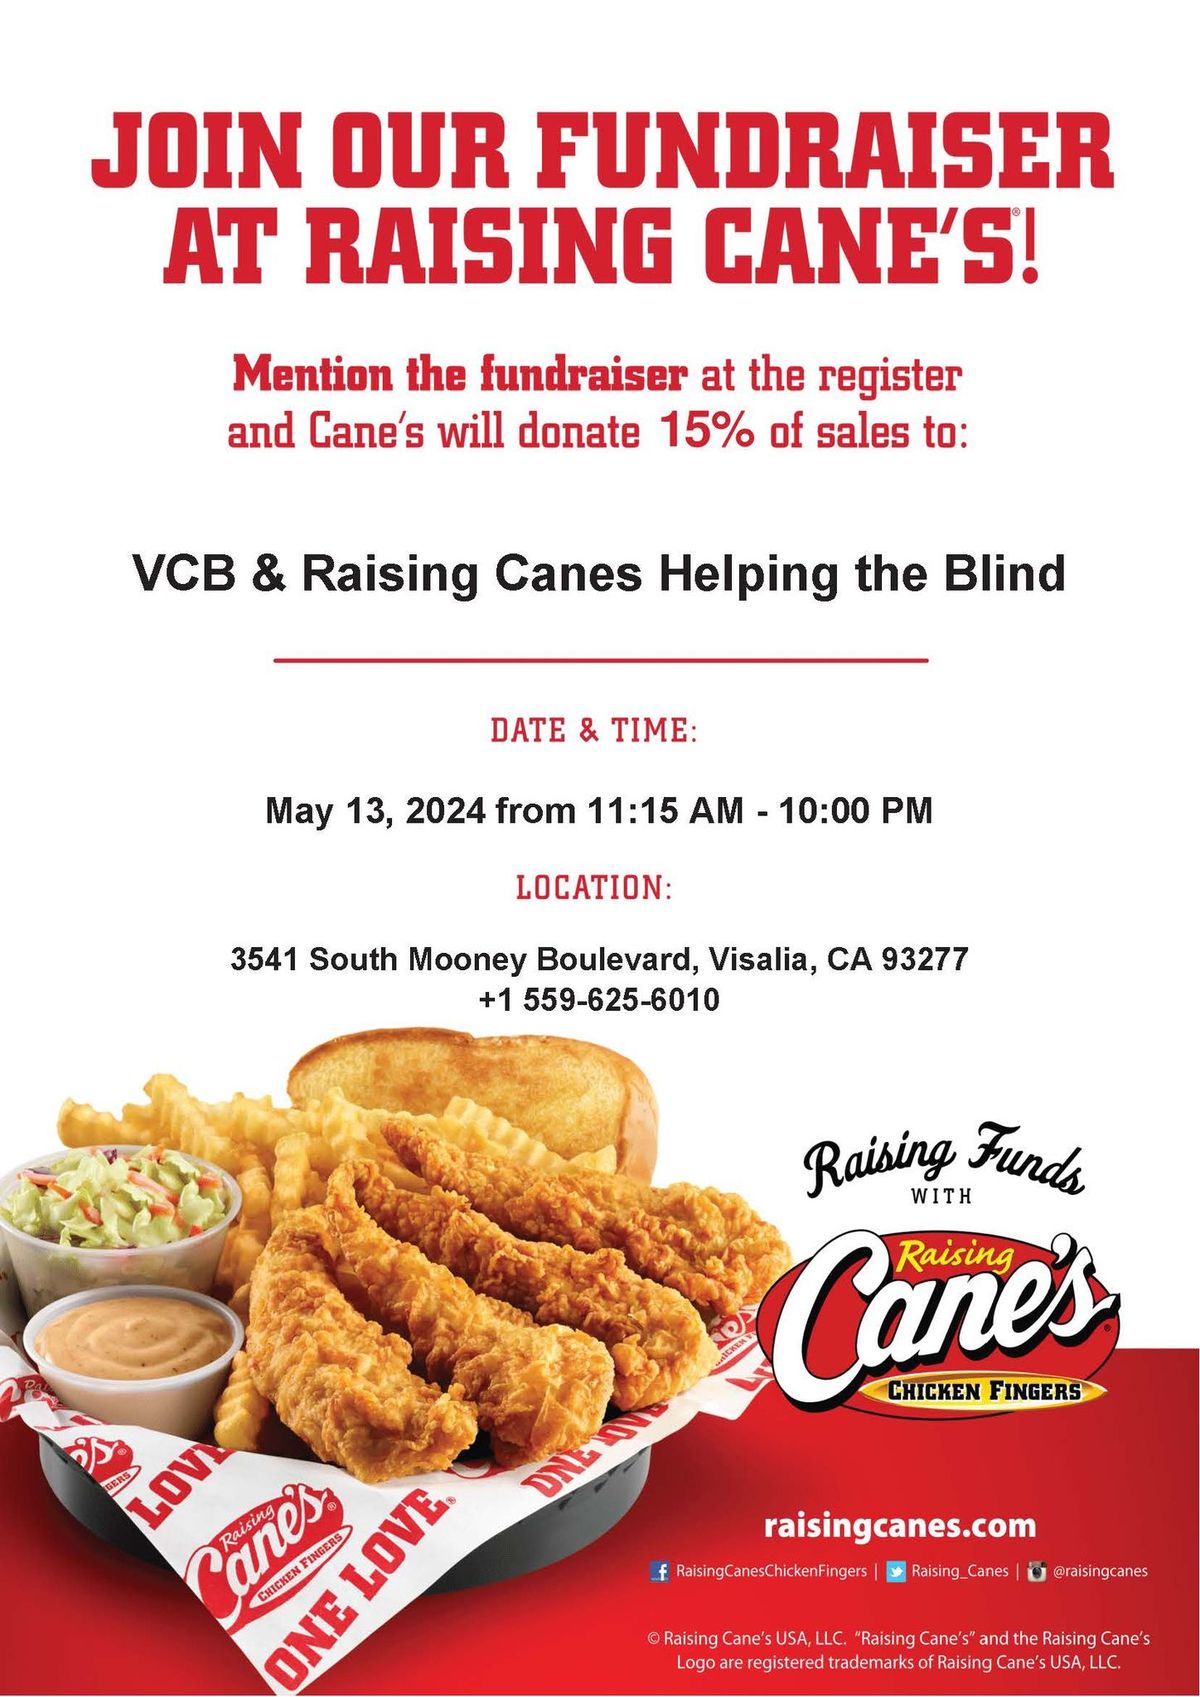 Visalia Raising Cane's Fundraiser for Valley Center for the Blind